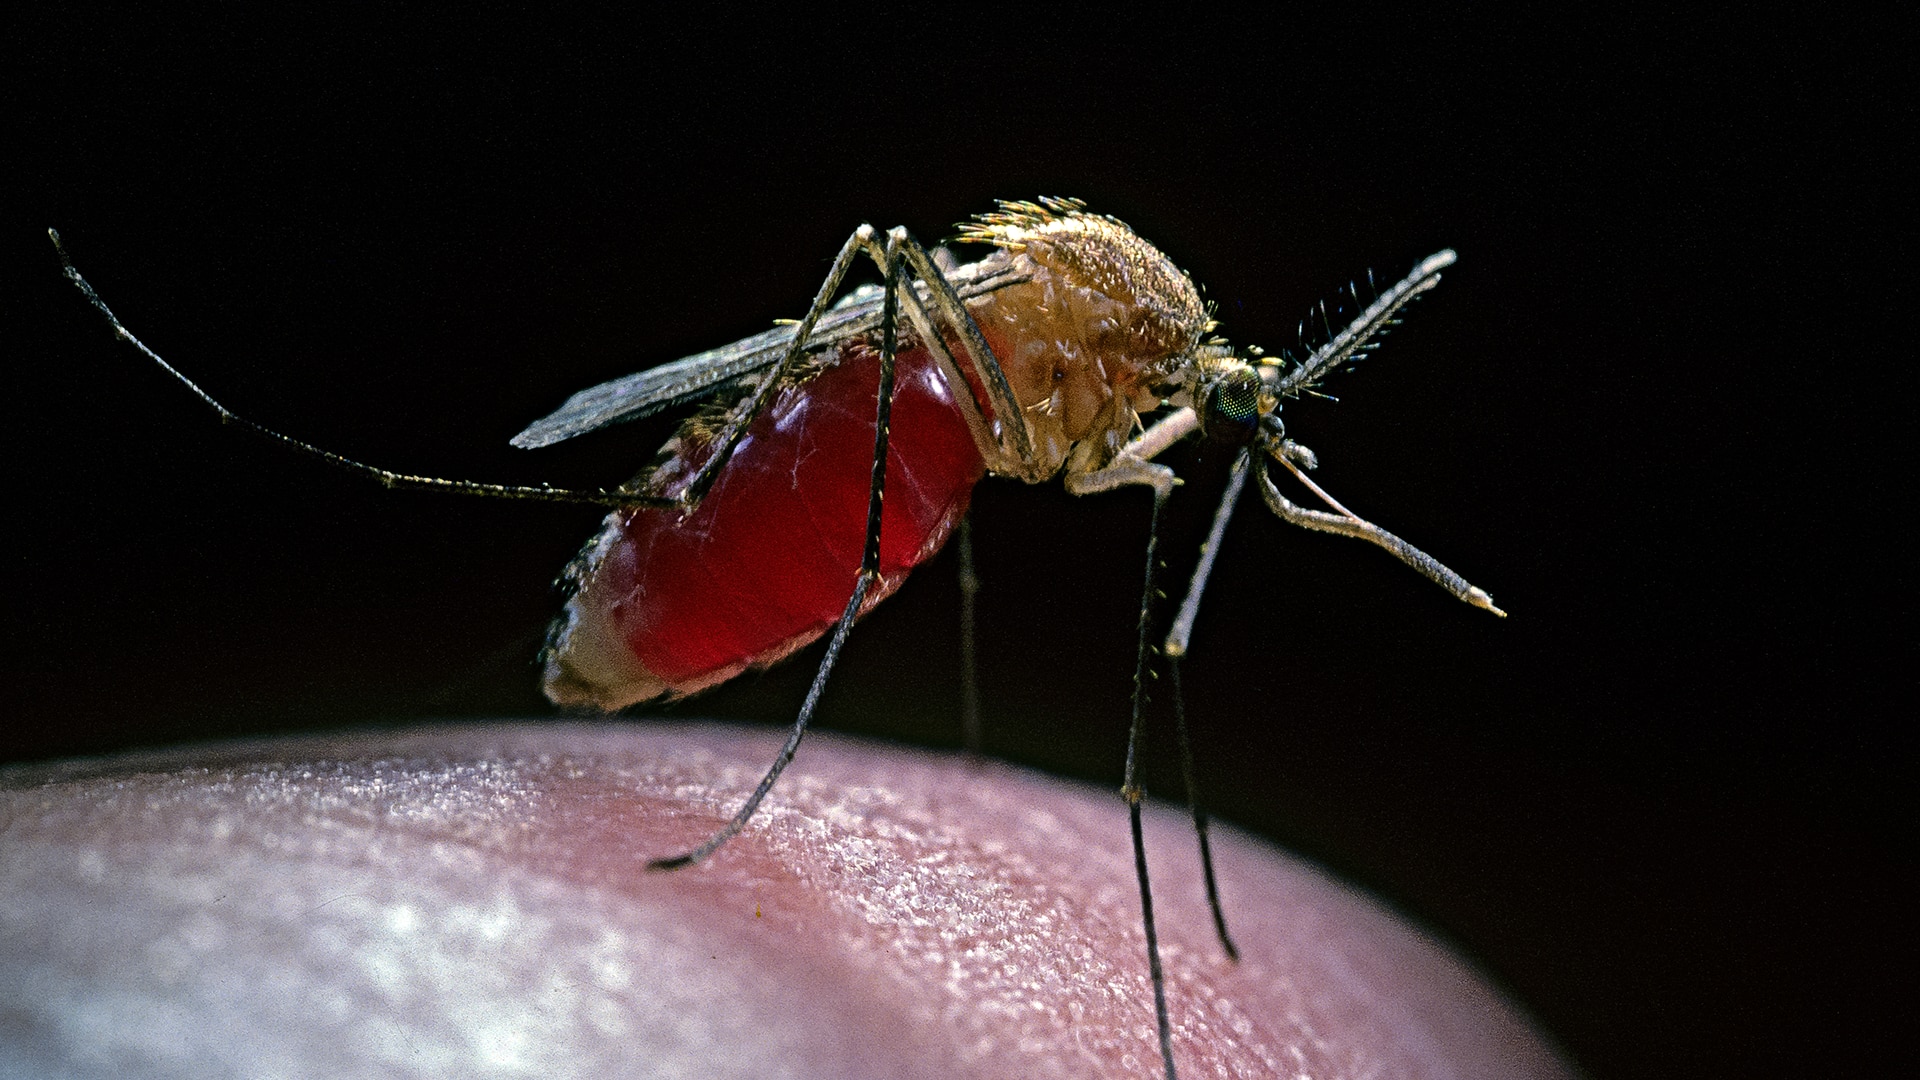 Common house mosquito